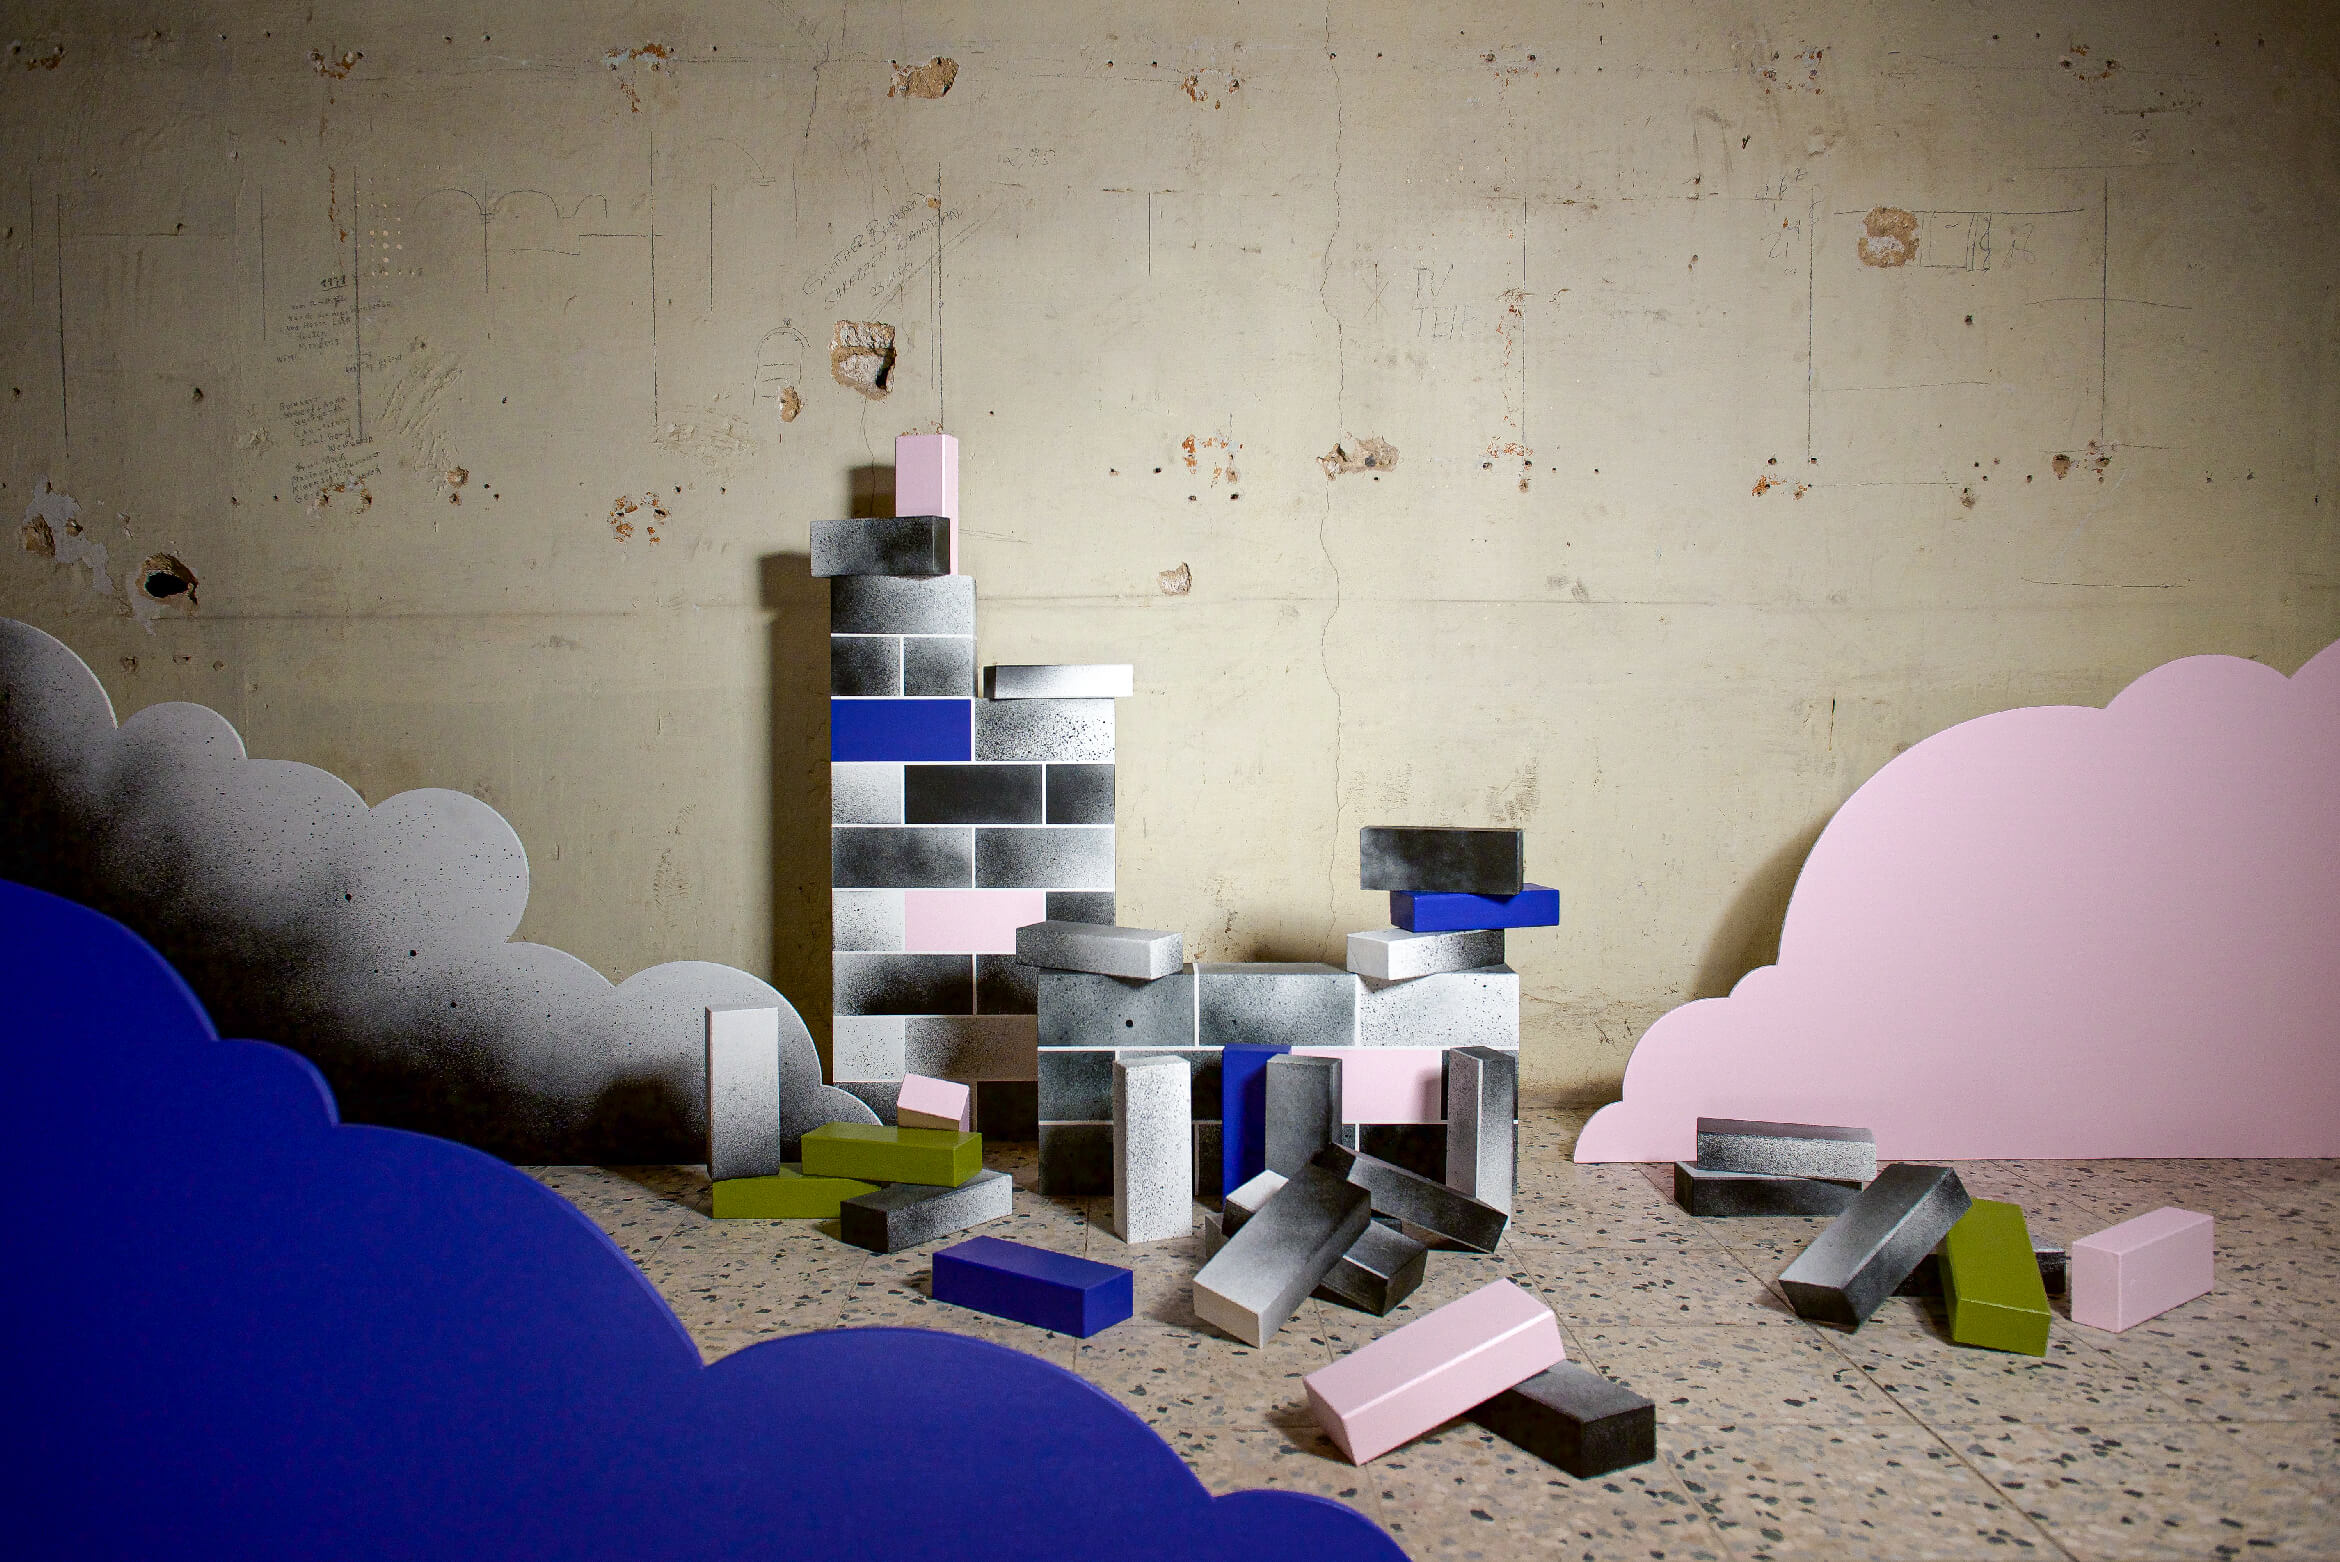 studio-andrebritz-people-in-boxes-installation-indoor-03-1